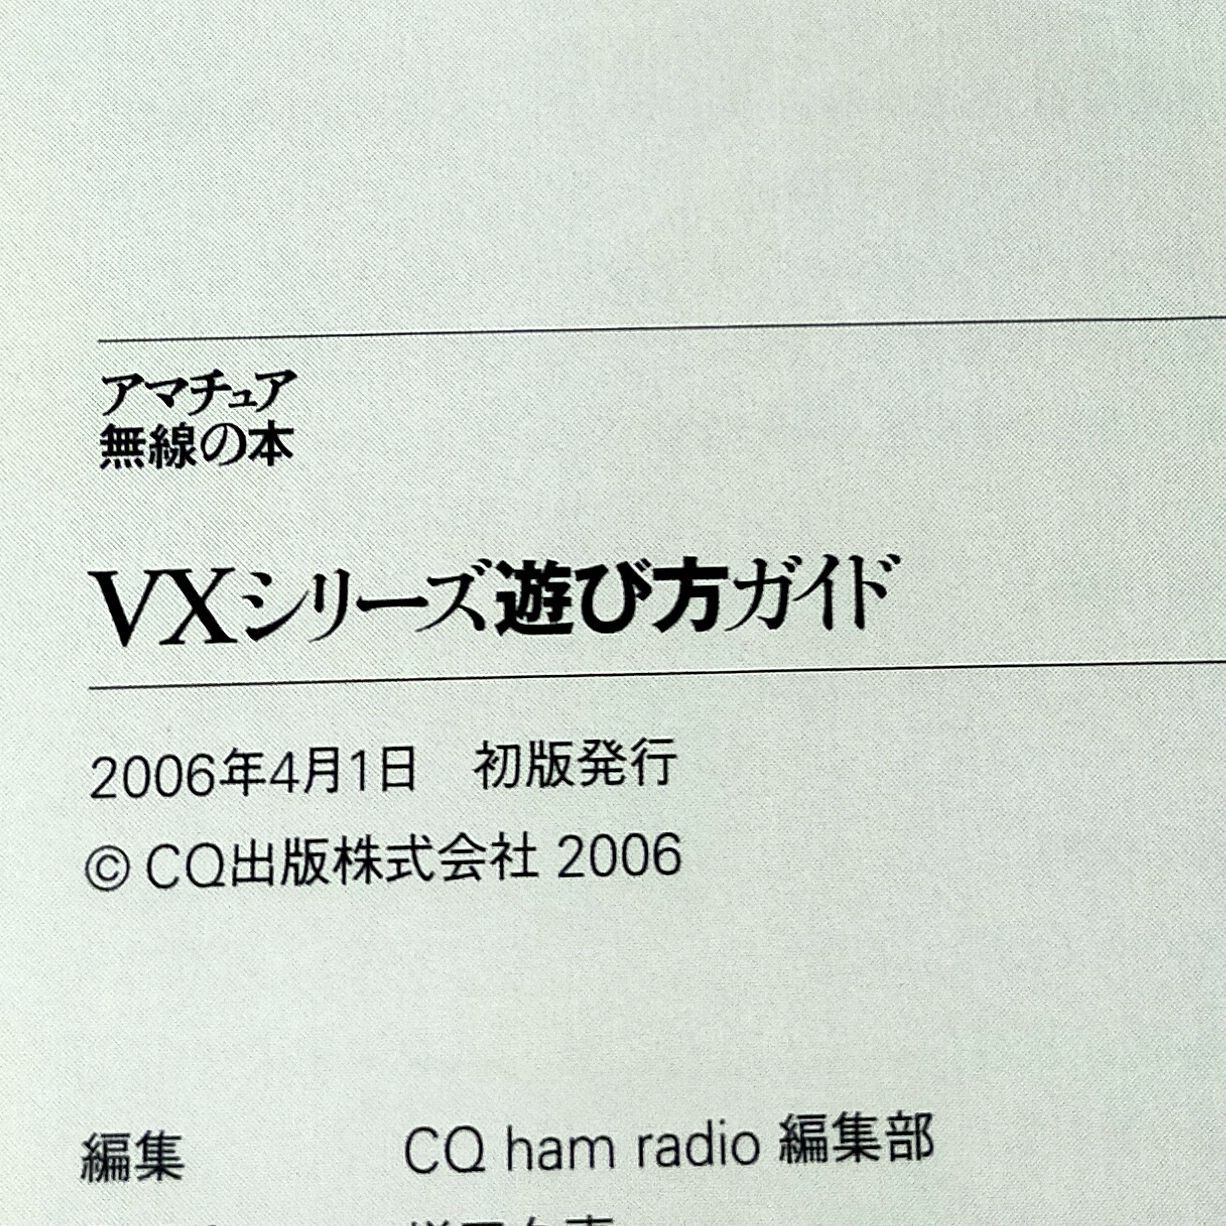 VXシリーズ遊び方ガイド (アマチュア無線の本) - メルカリ